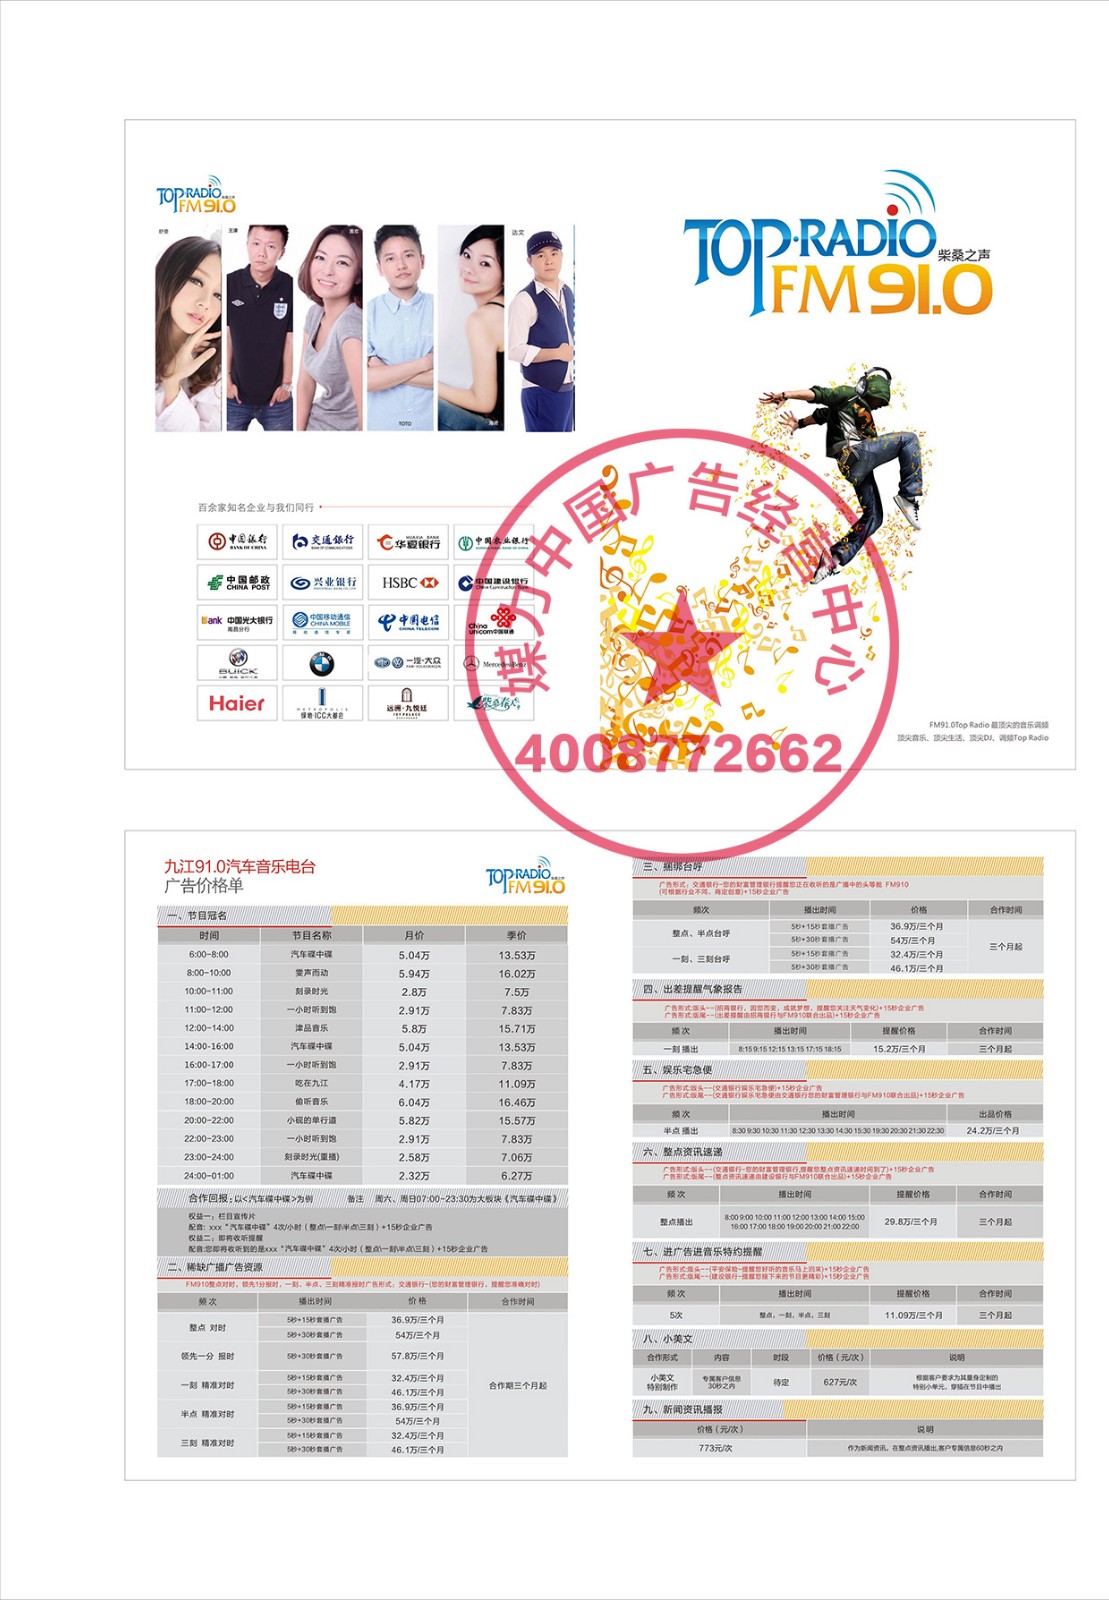 九江FM91.0音乐广播2018年广告刊例价格表